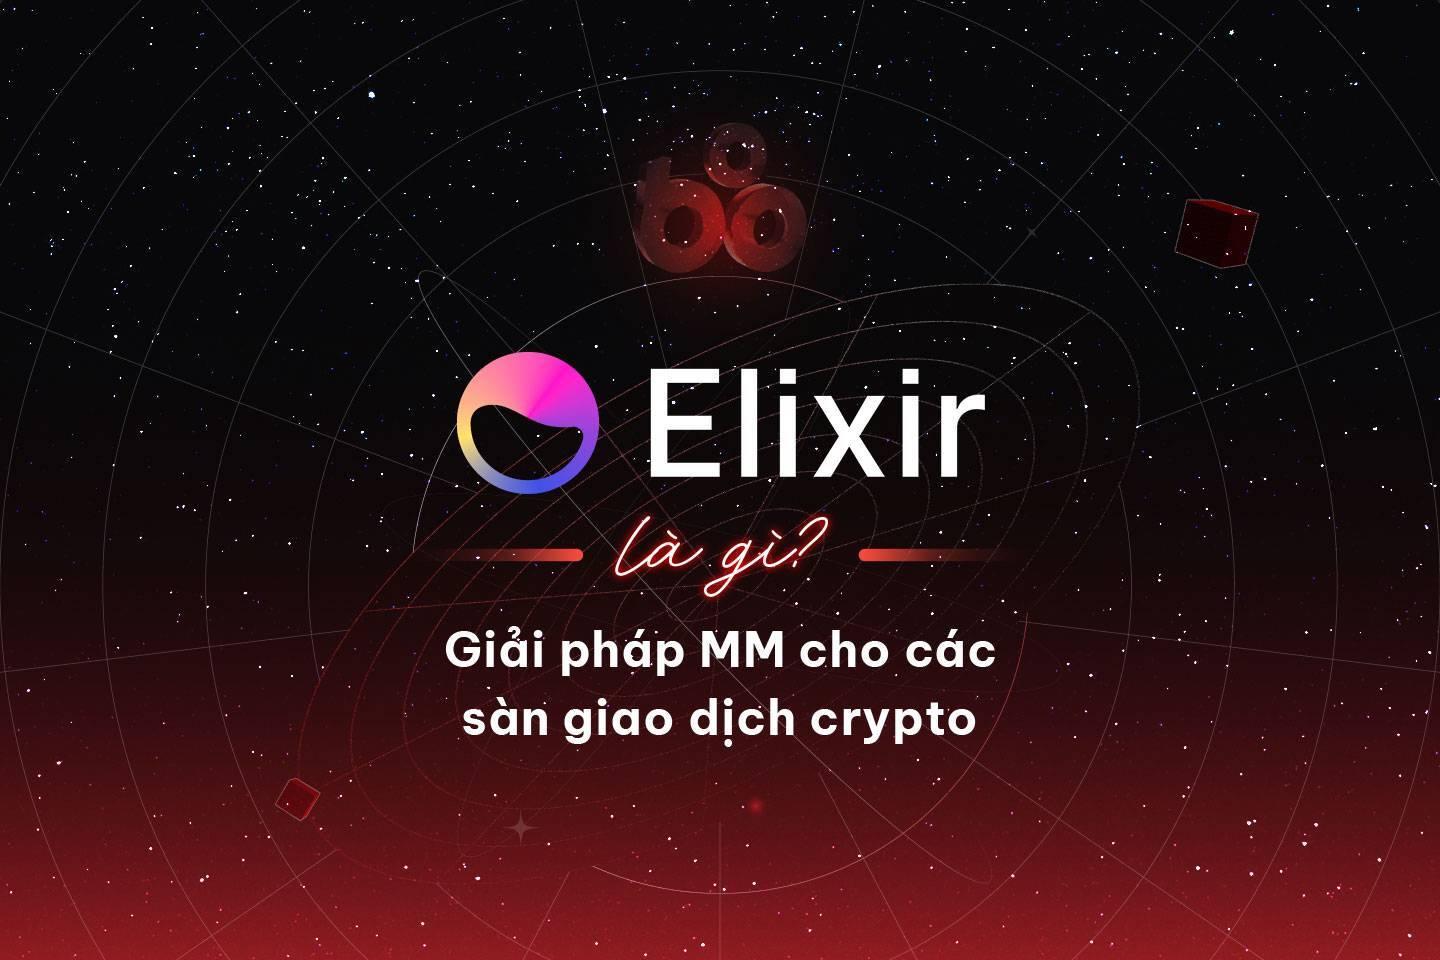 elixir-protocol-elxr-la-gi-giai-phap-mm-cho-cac-san-giao-dich-crypto